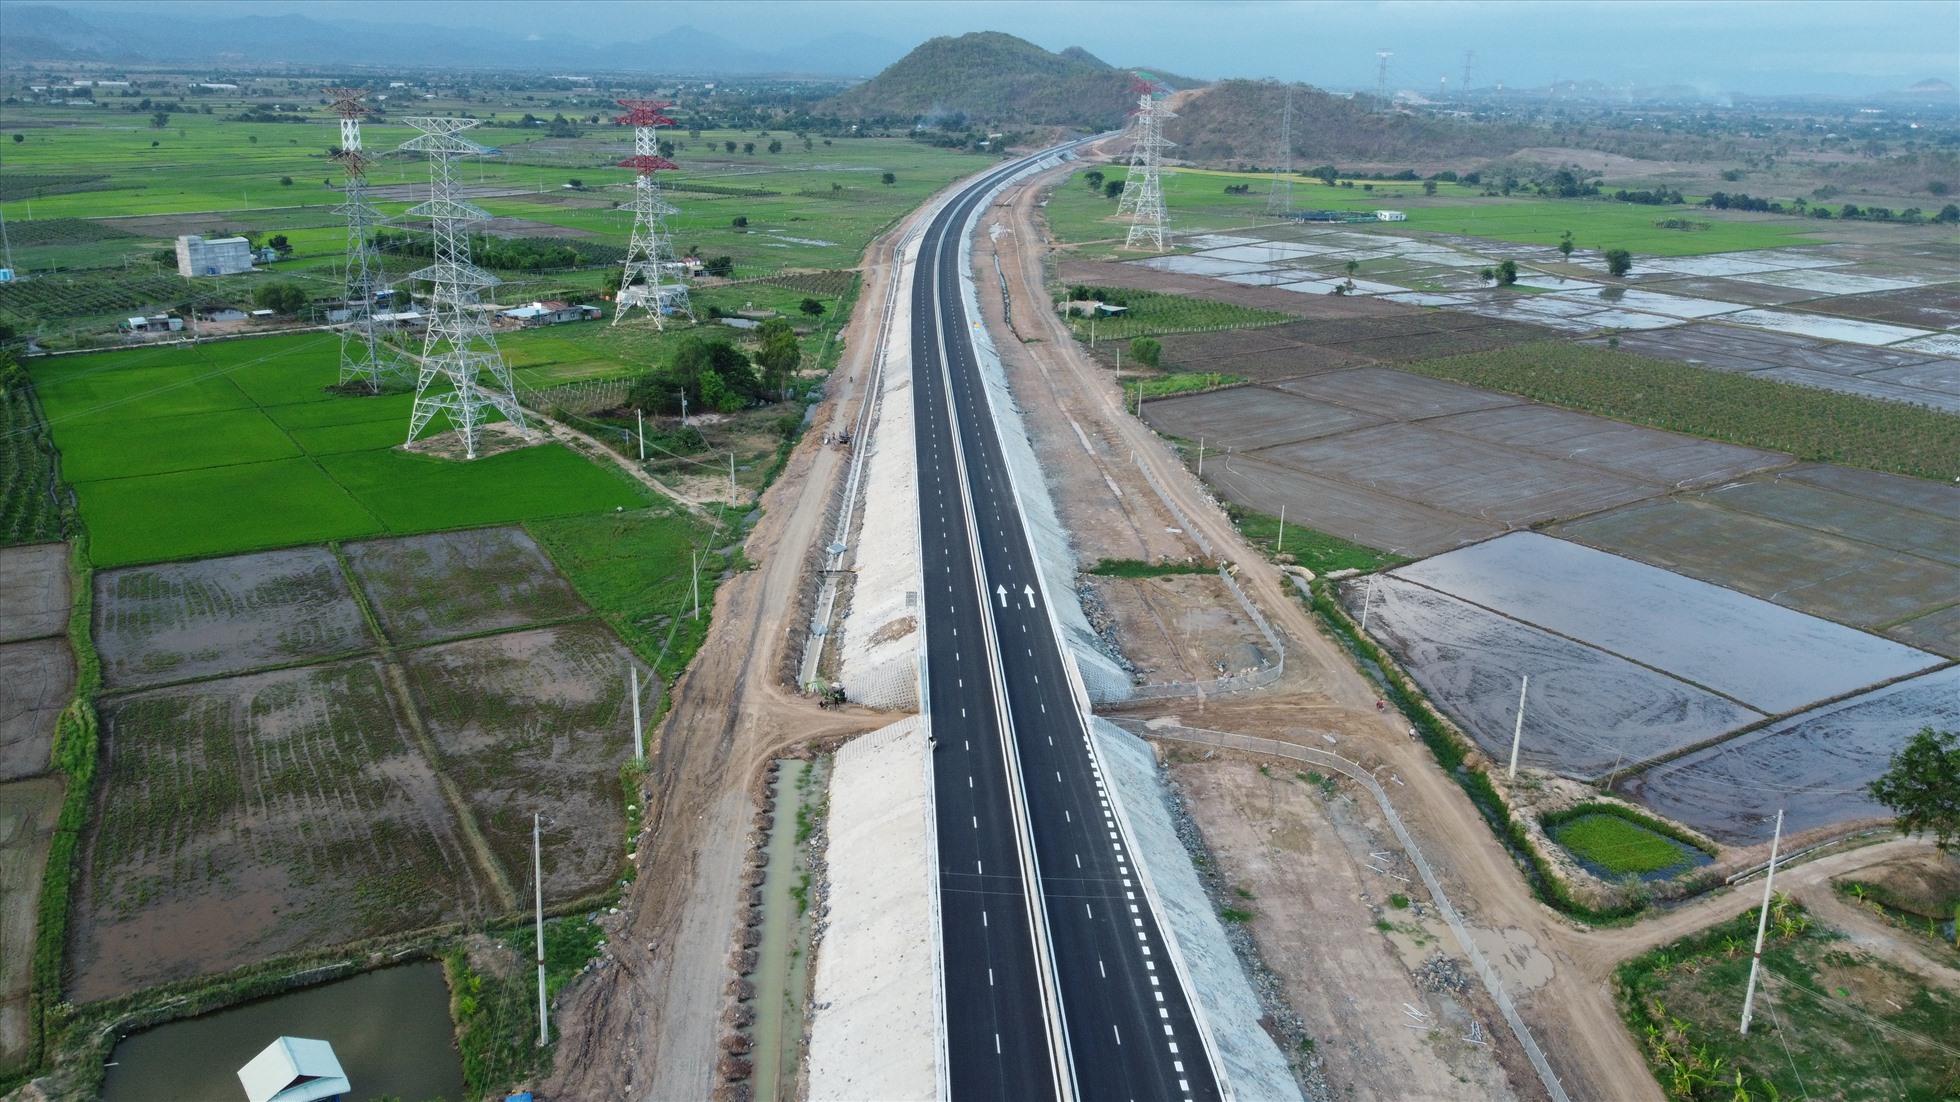 Theo kế hoạch, từ 10h ngày 19.5, cao tốc Vĩnh Hảo – Phan Thiết chính thức đưa vào khai thác, vận hành cùng với cao tốc Nha Trang - Cam Lâm. Các phương tiện được phép lưu thông trên đường cao tốc với tốc độ tối đa 80 km/h và tốc độ tối thiểu 60 km/h. Xe máy không được phép lưu thông vào cao tốc.